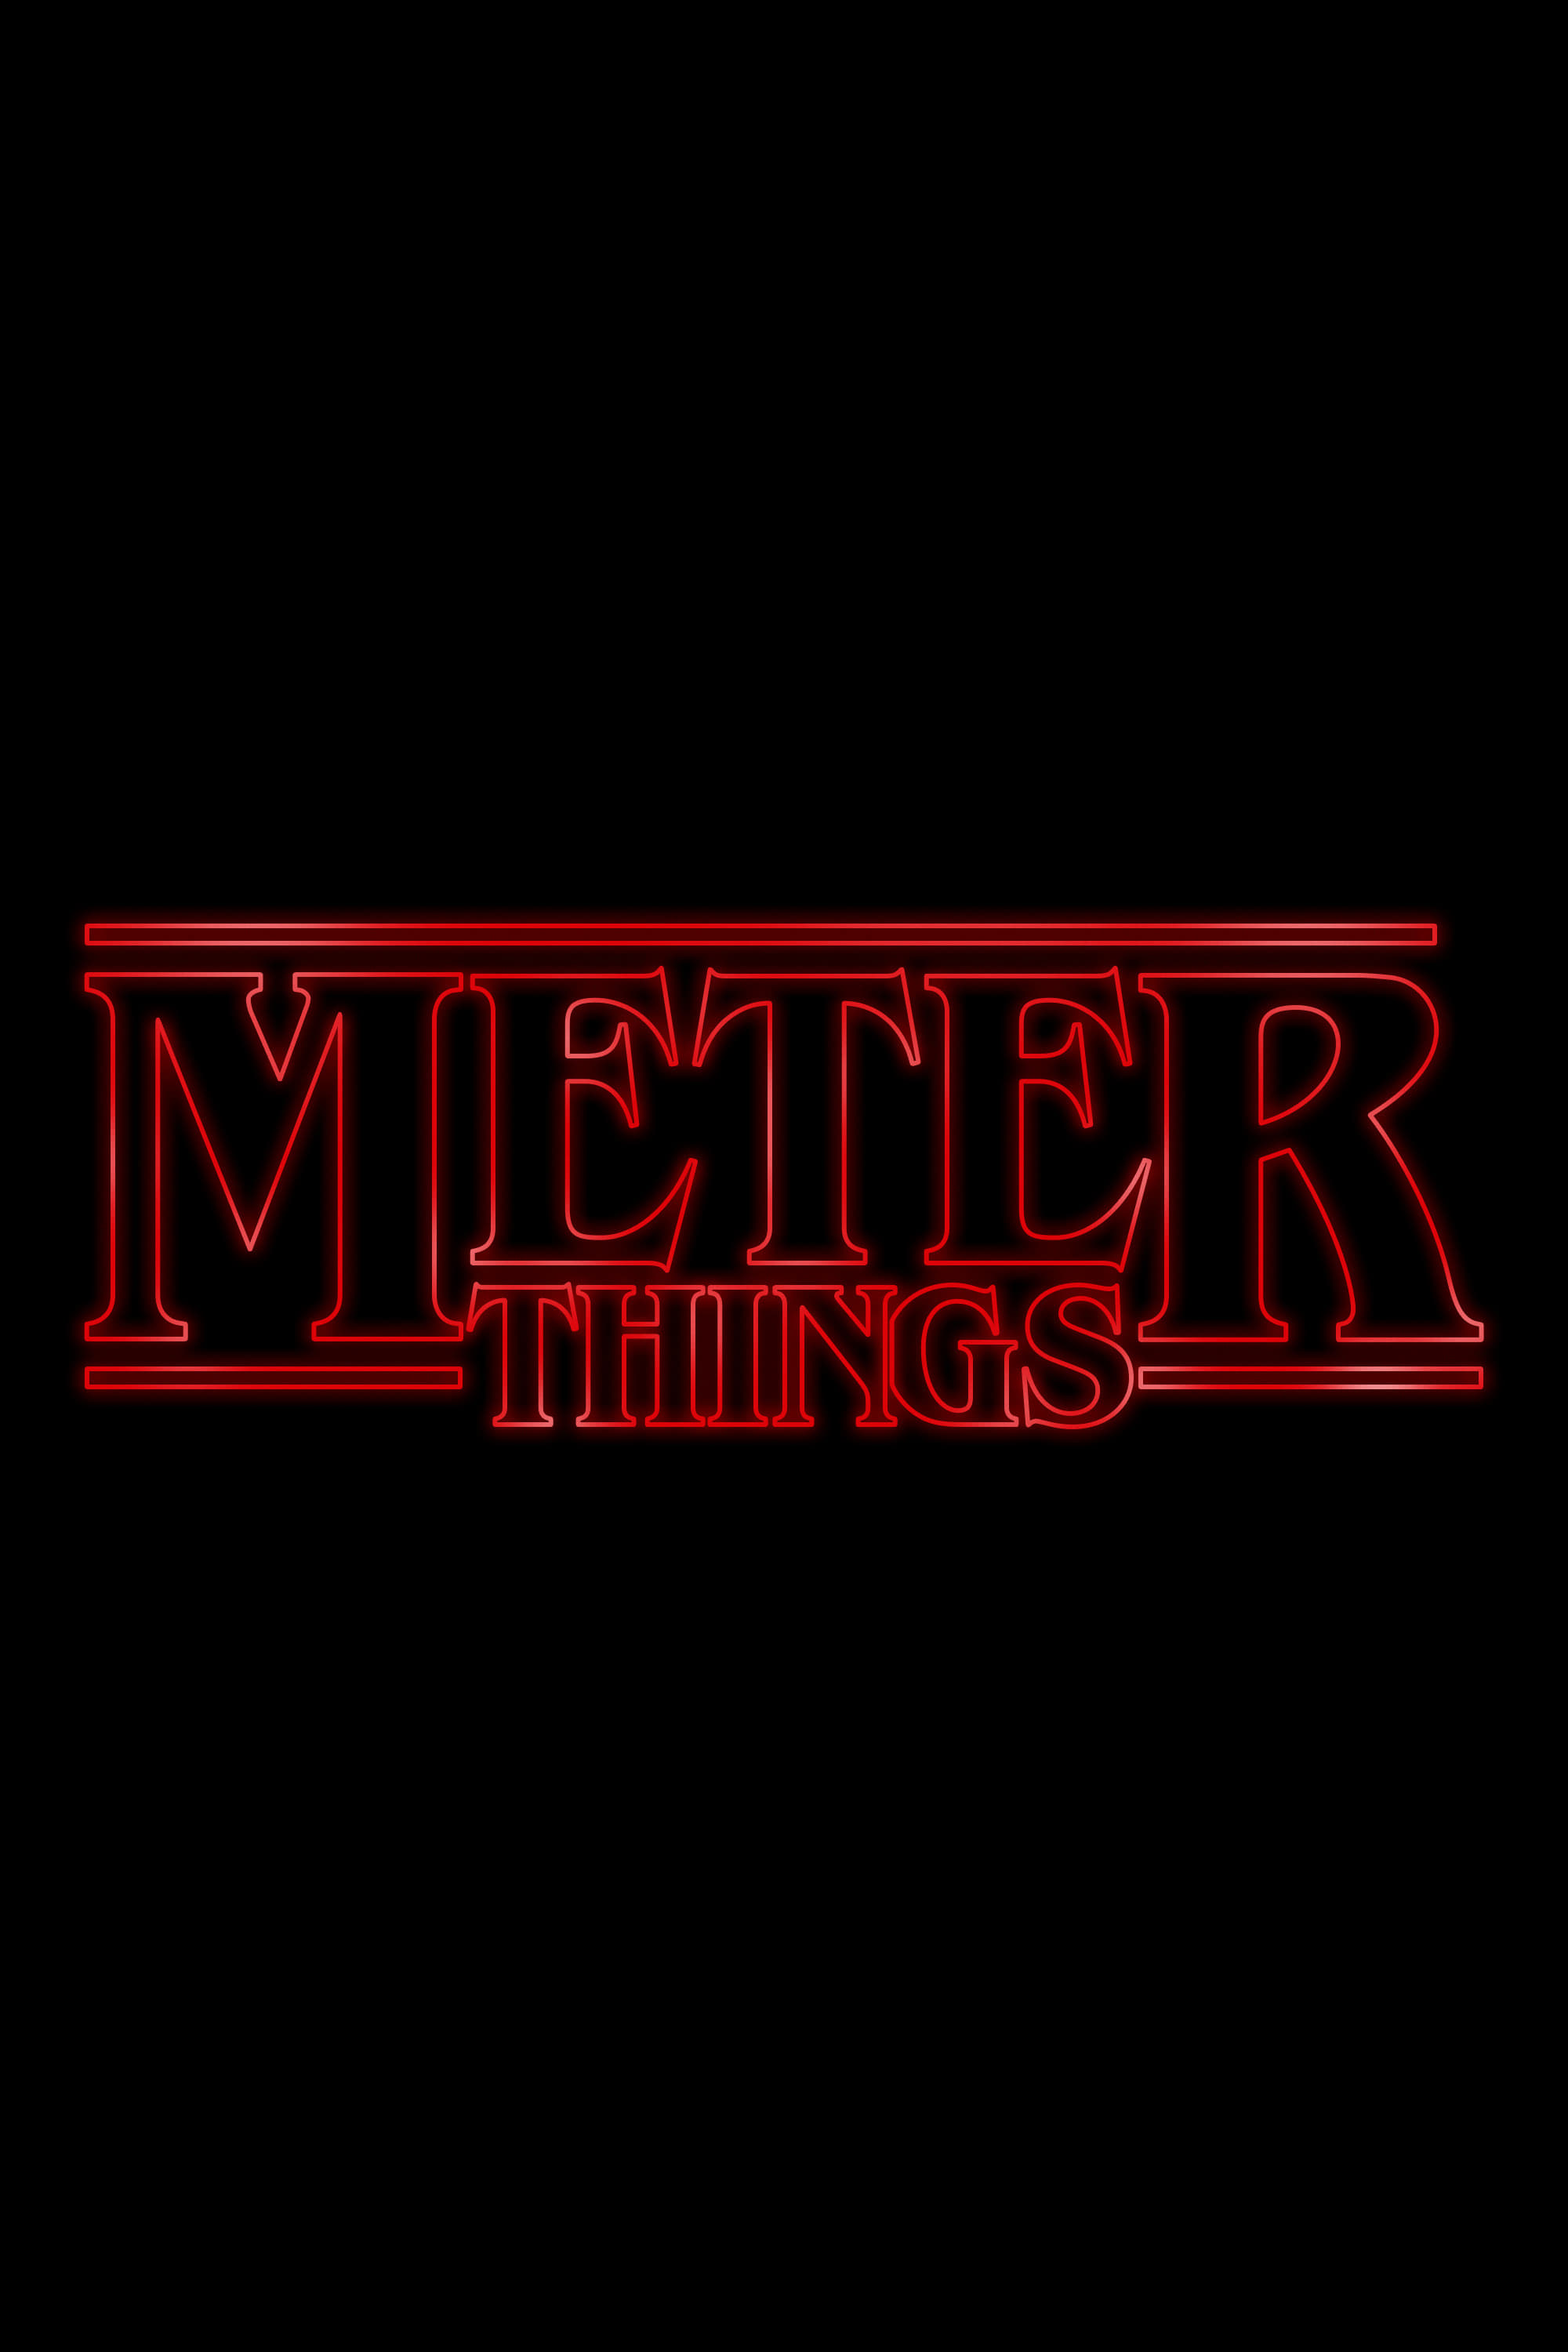 Meter Things